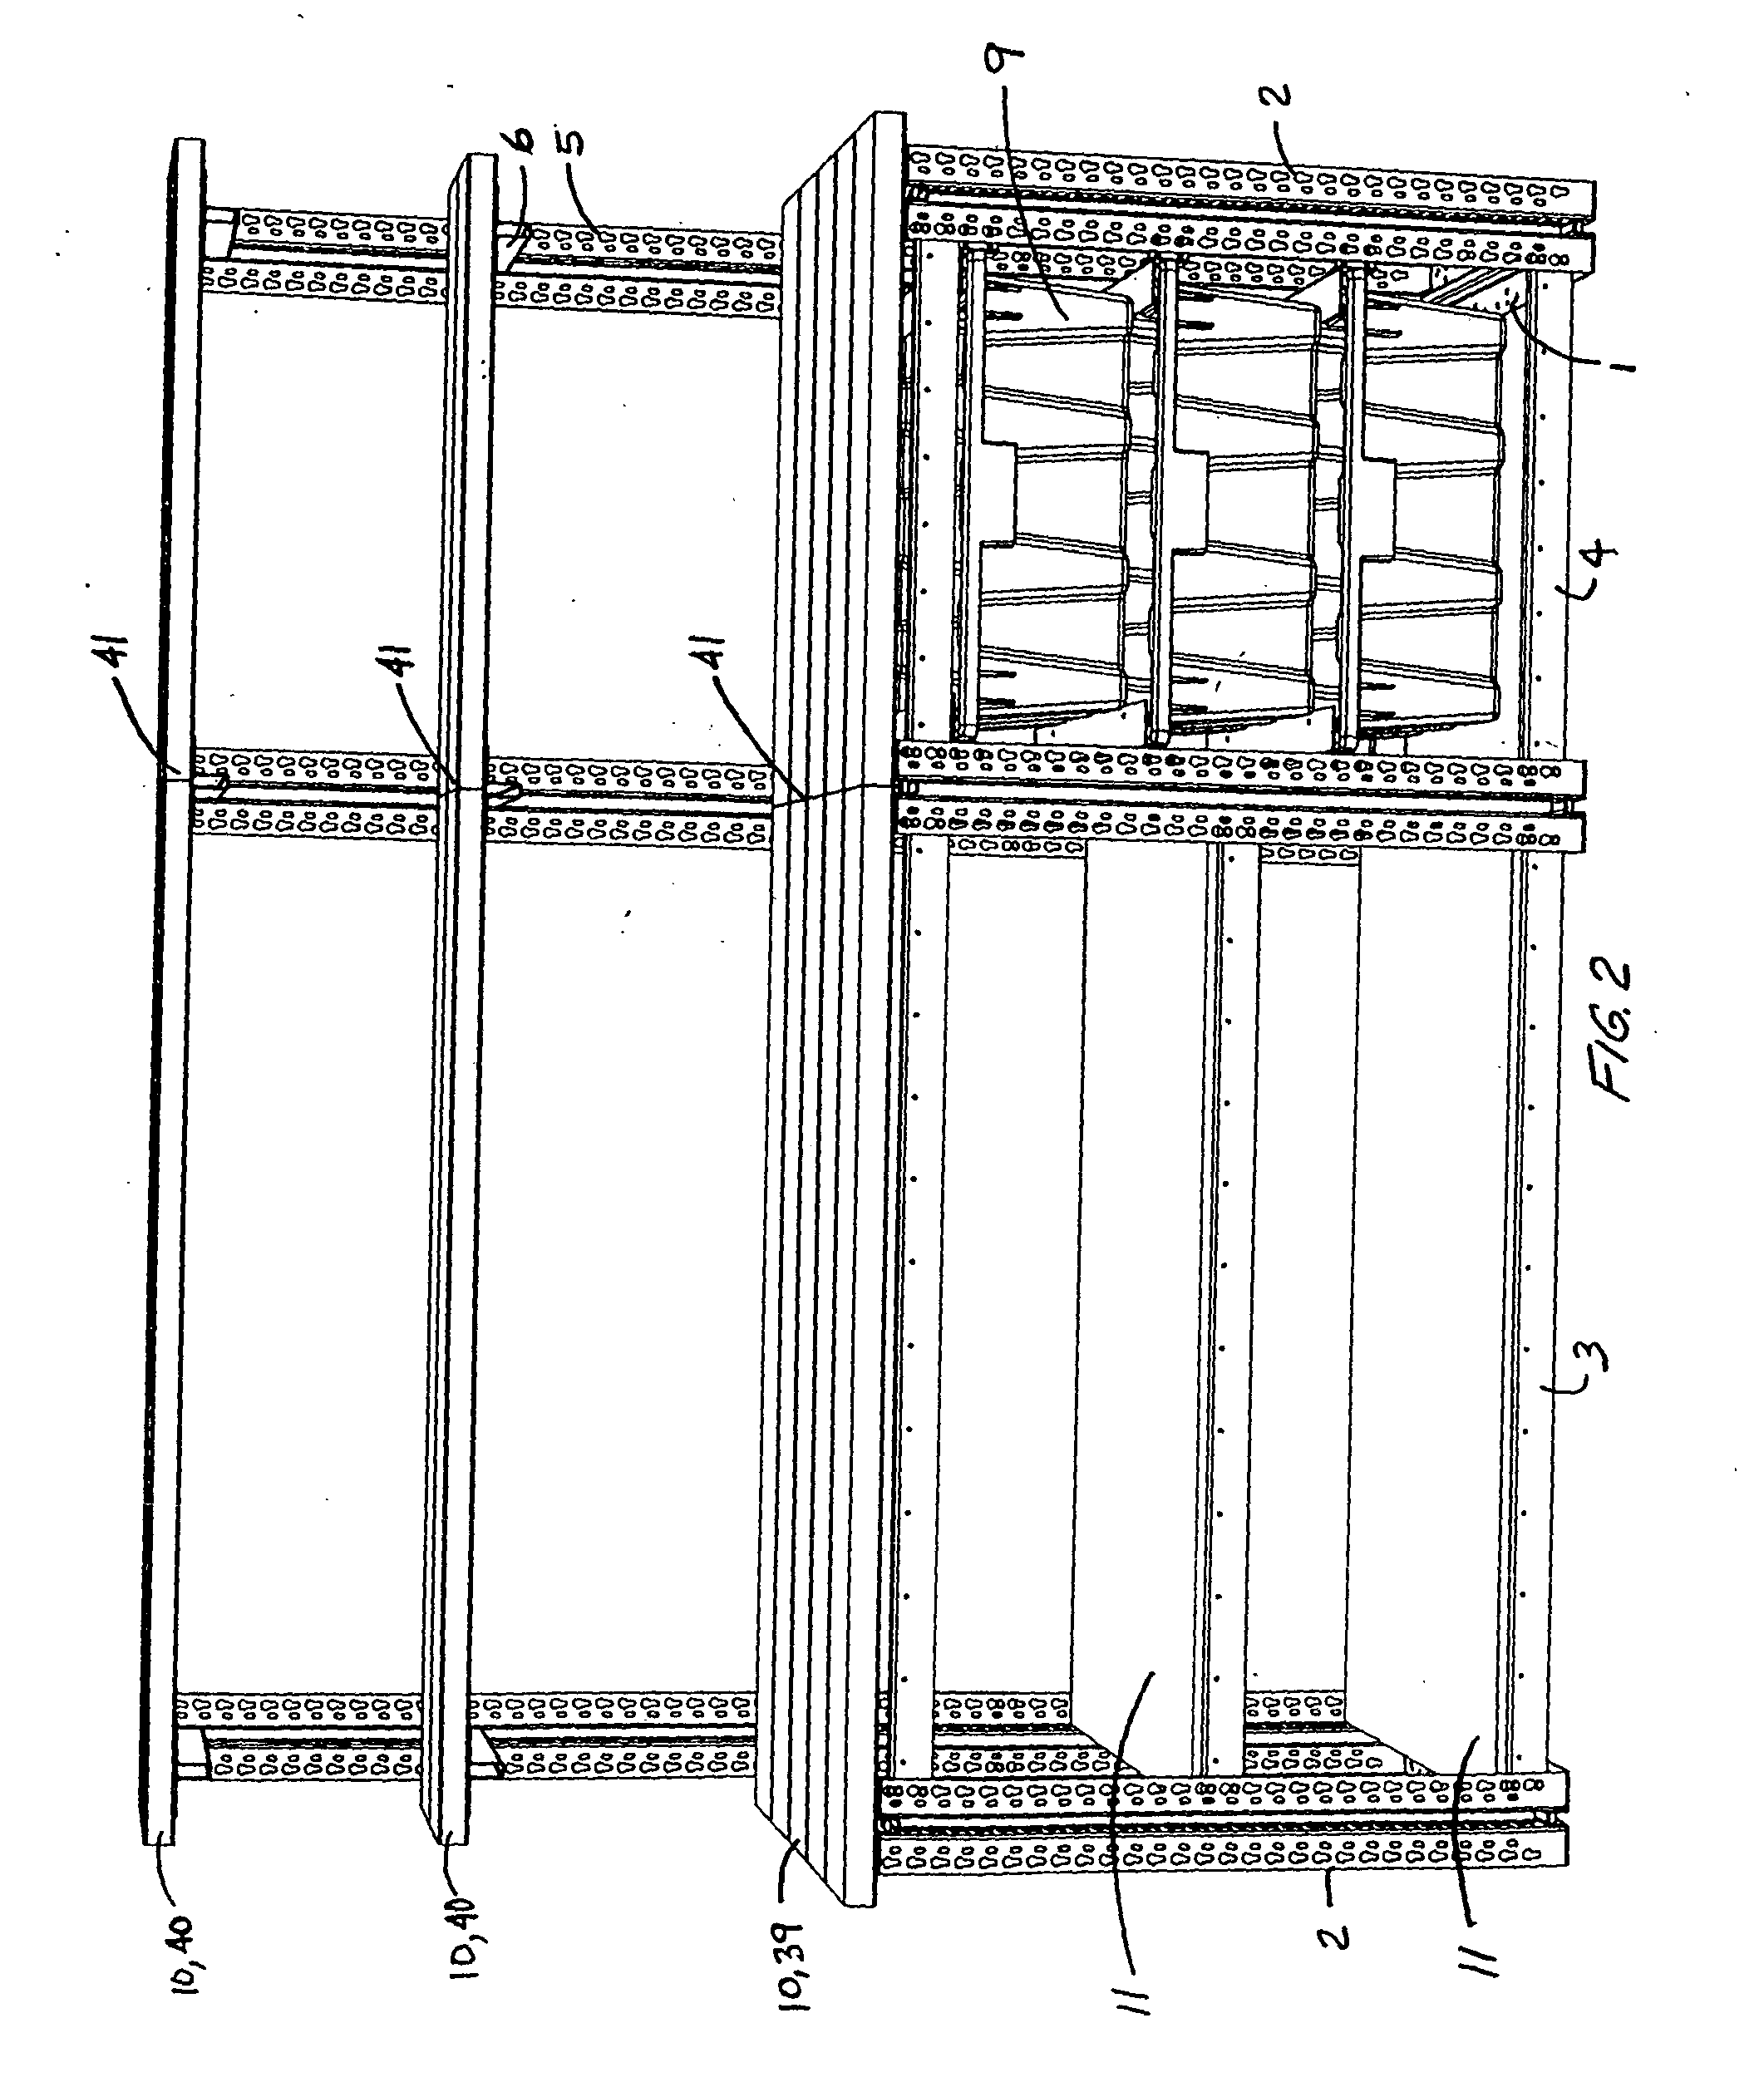 Modular workbench